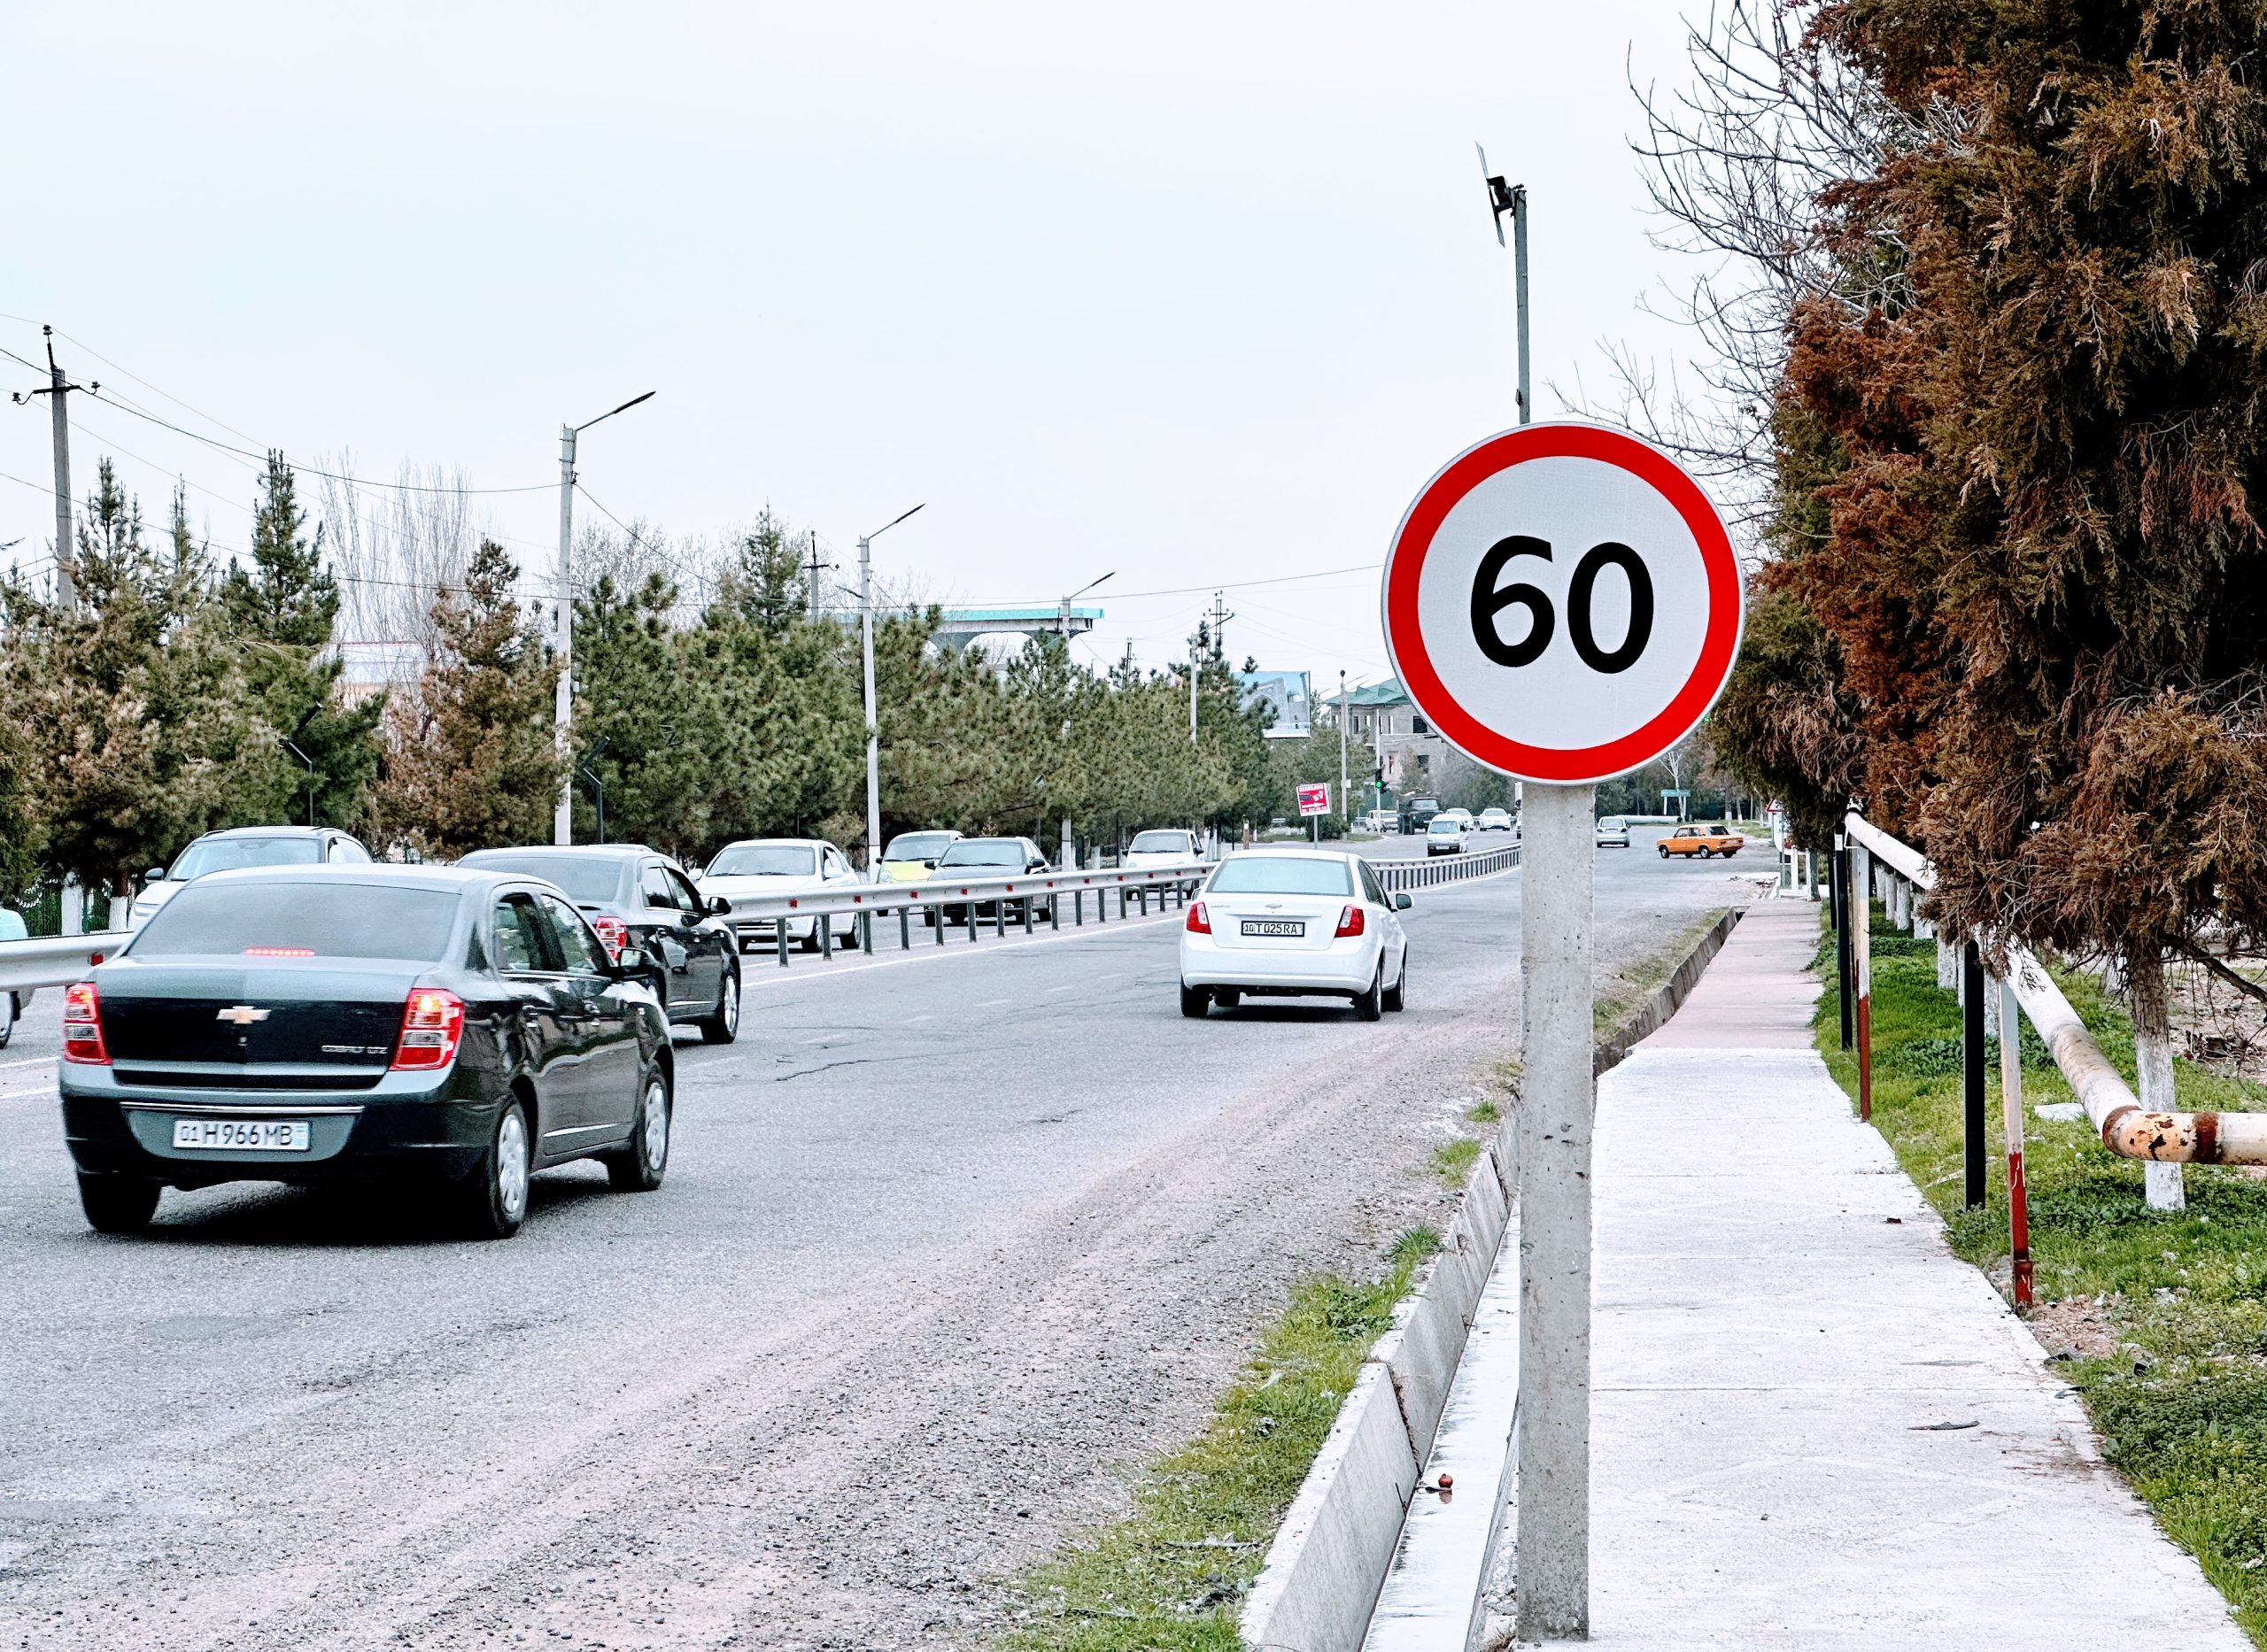 Максимальная скорость снижена до 60 км:ч во всех городах